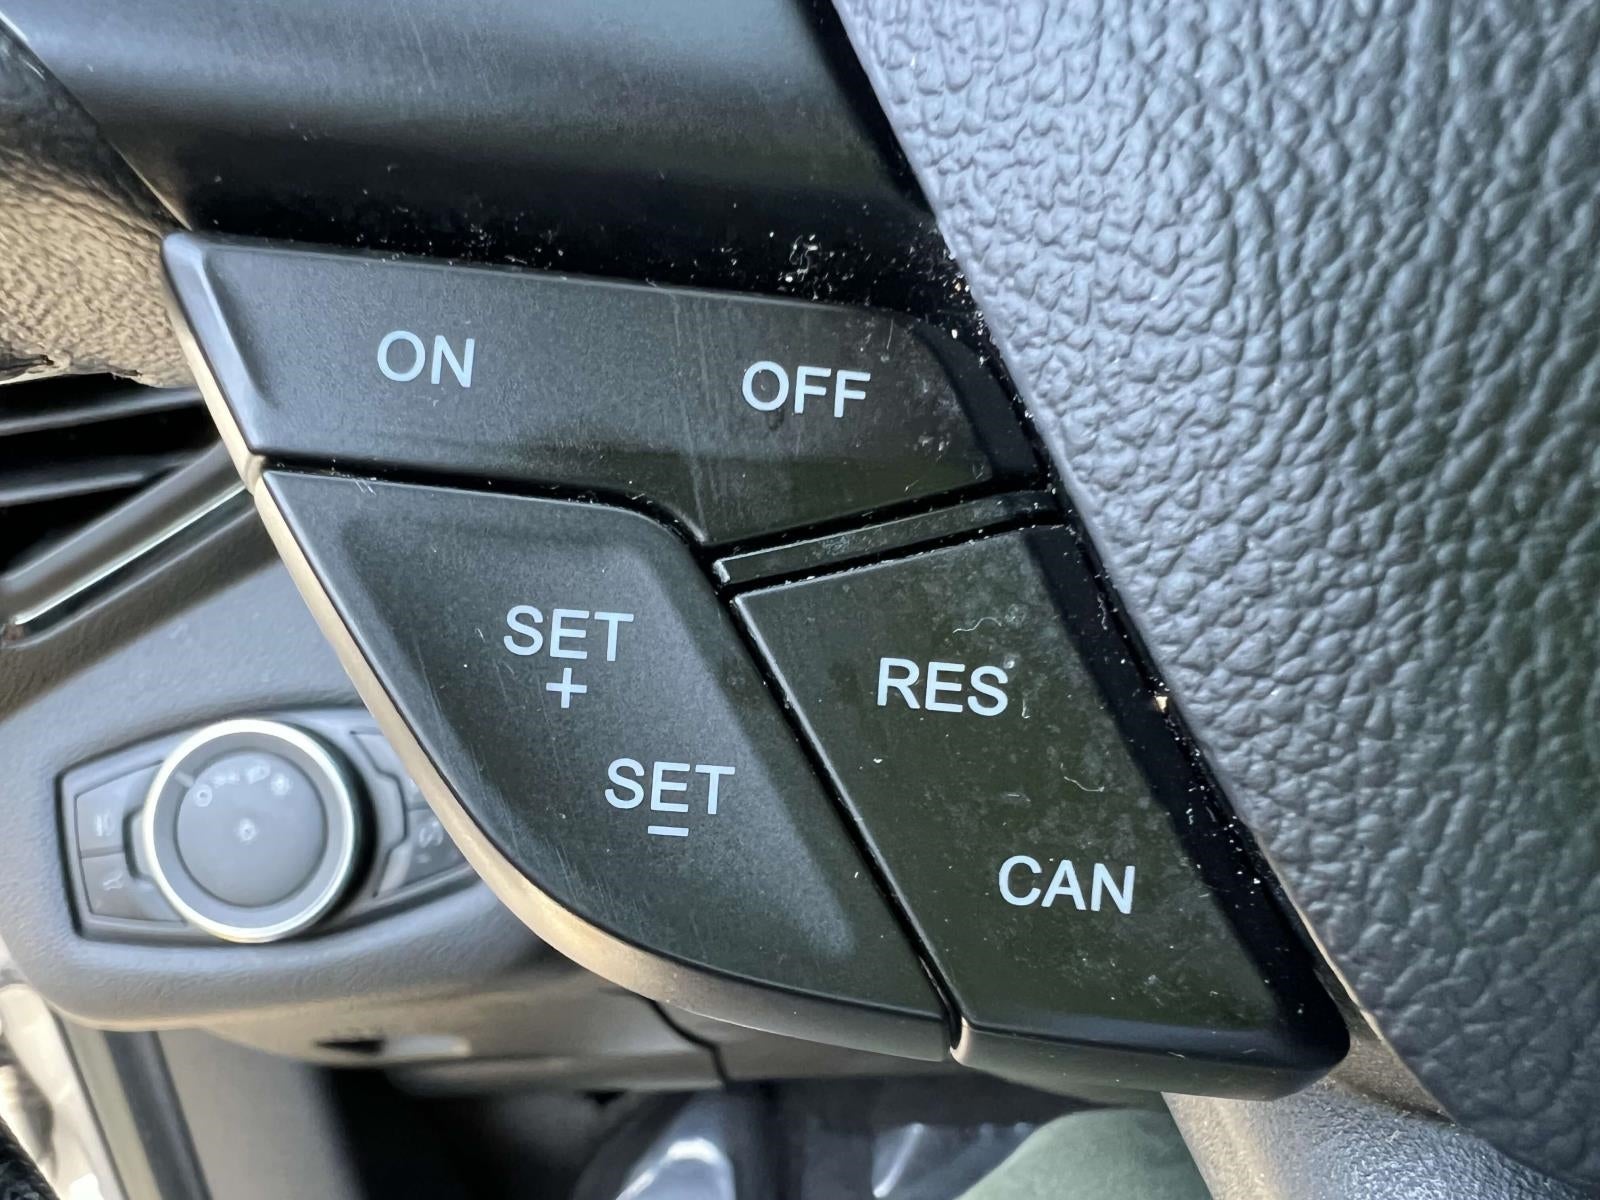 2018 Ford Escape SEL 4WD